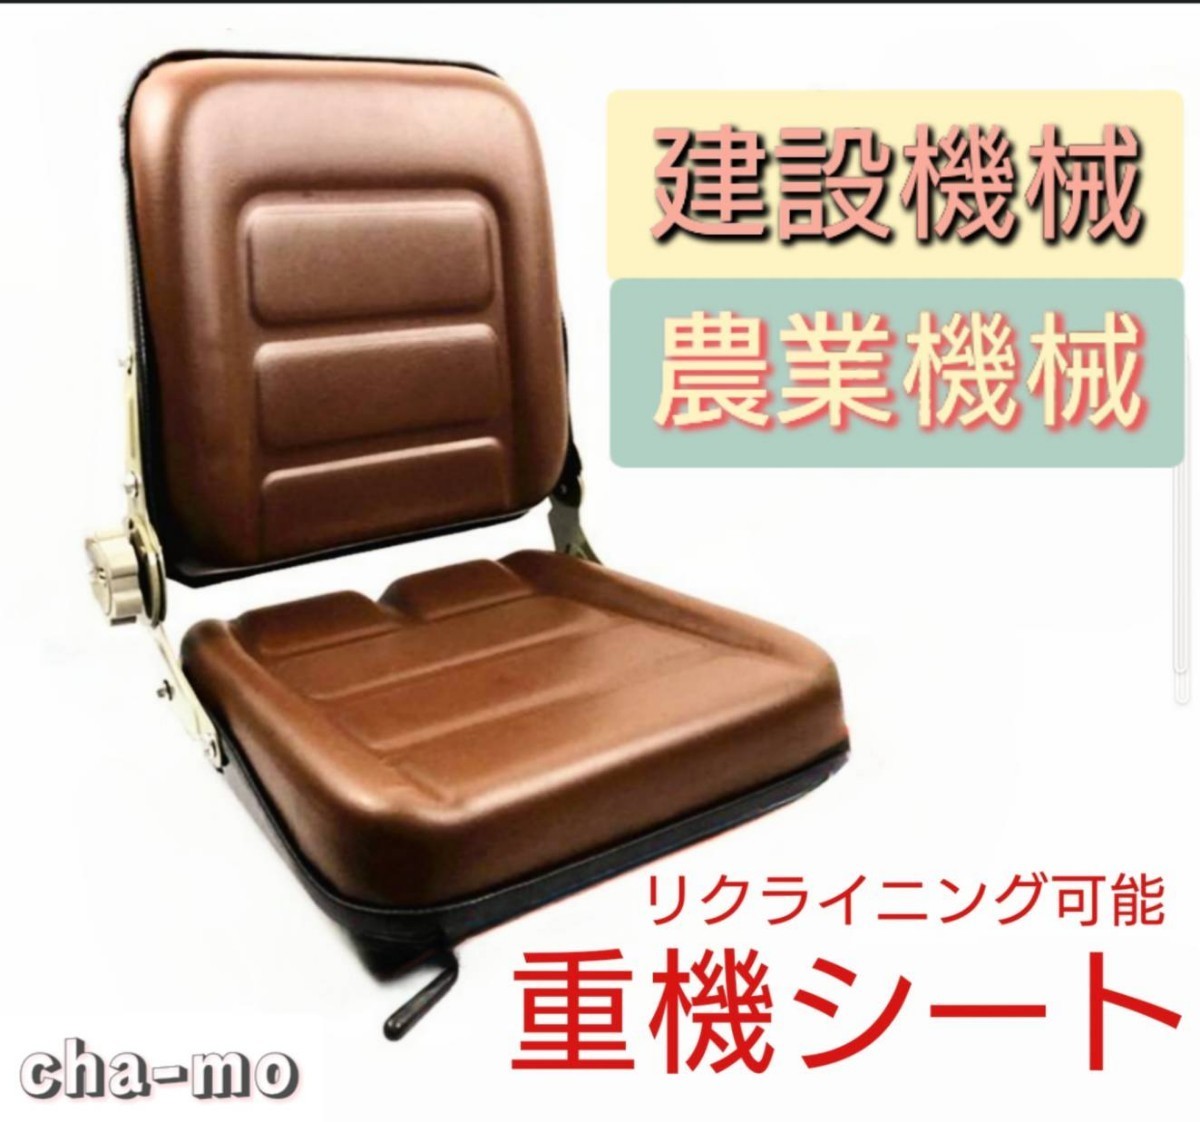 超希少ブラウン色 レトロ仕様 重機 シート ユンボ 座席 椅子 フォークリフト  多目的シート リクライニングシートの画像1